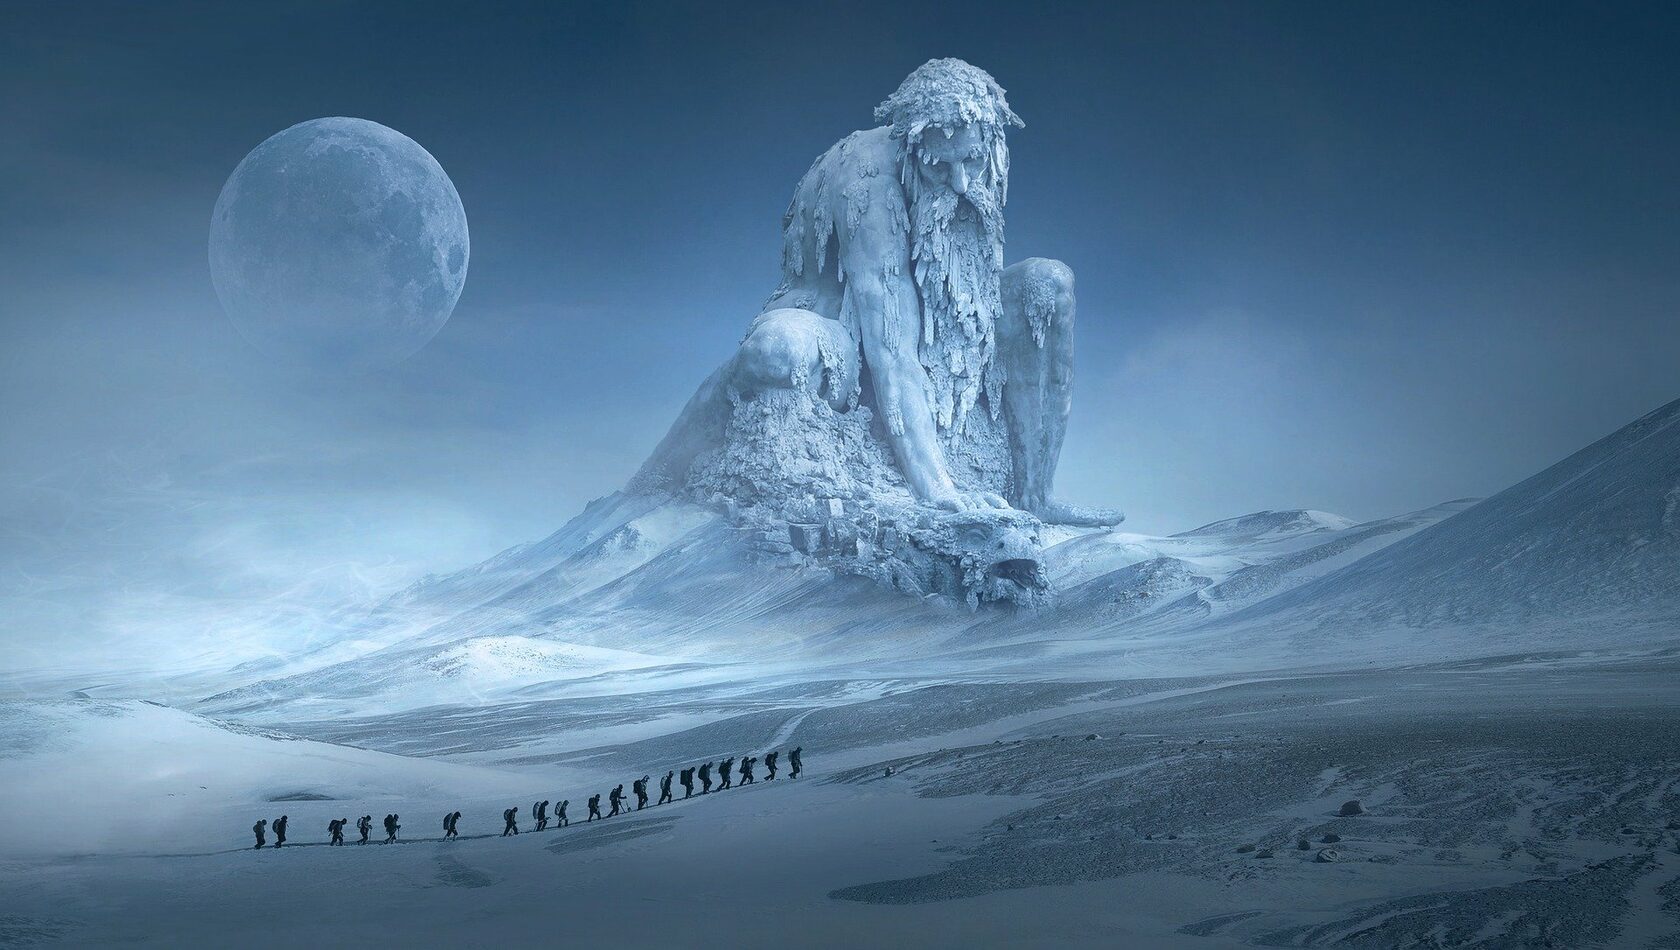 Славянский зимний дух, олицетворяющий зиму и Сущность зимы в мифологии народов мира